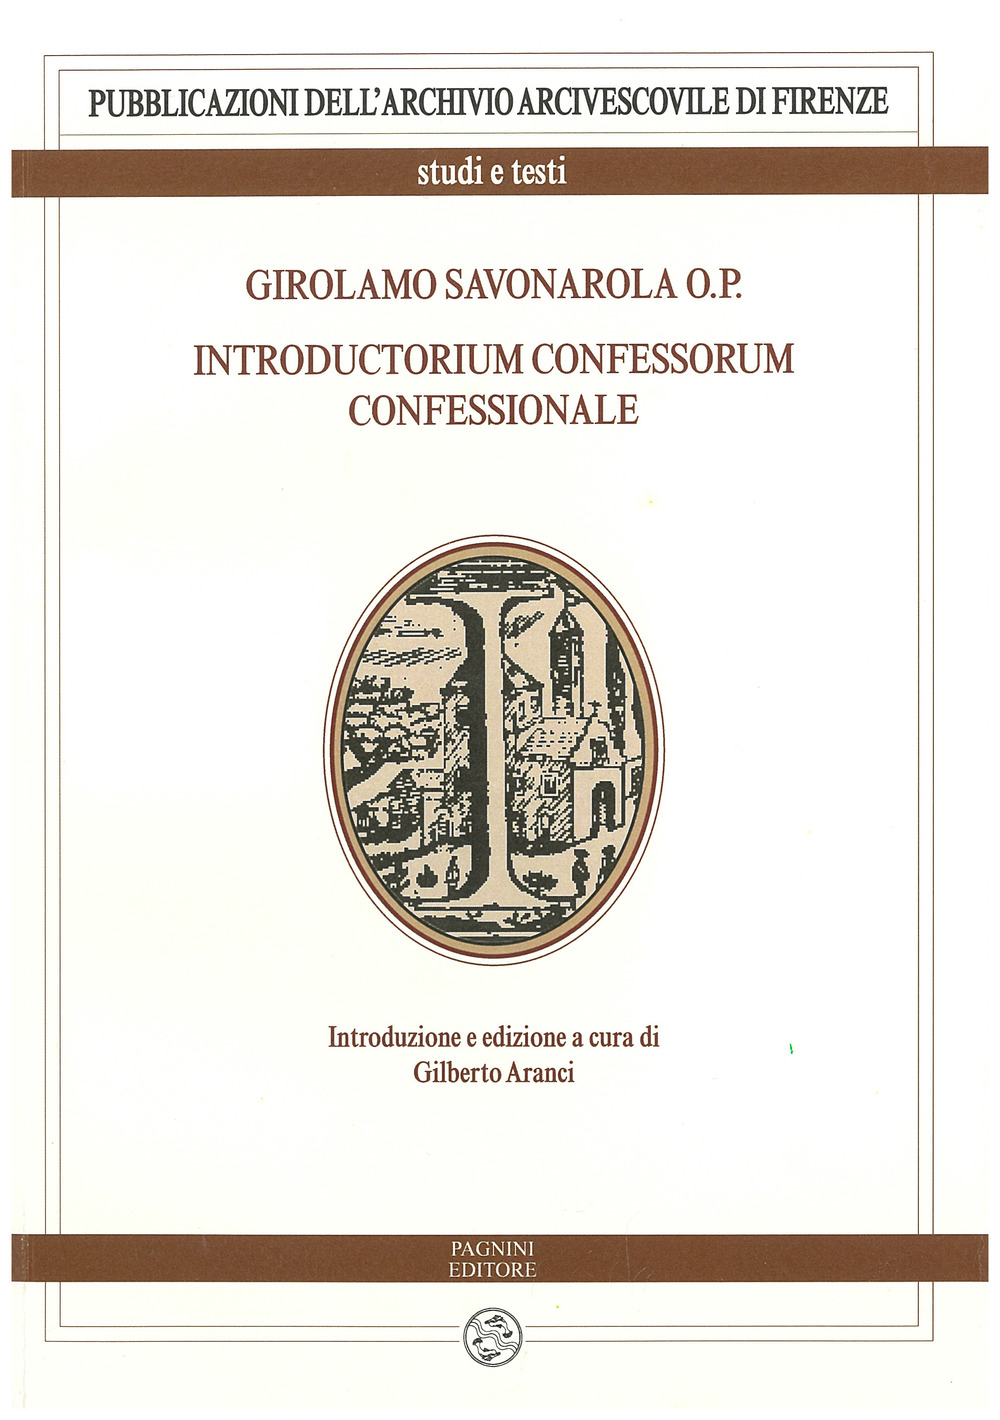 Girolamo Savonarola o.p. Introductorium confessorum confessionale